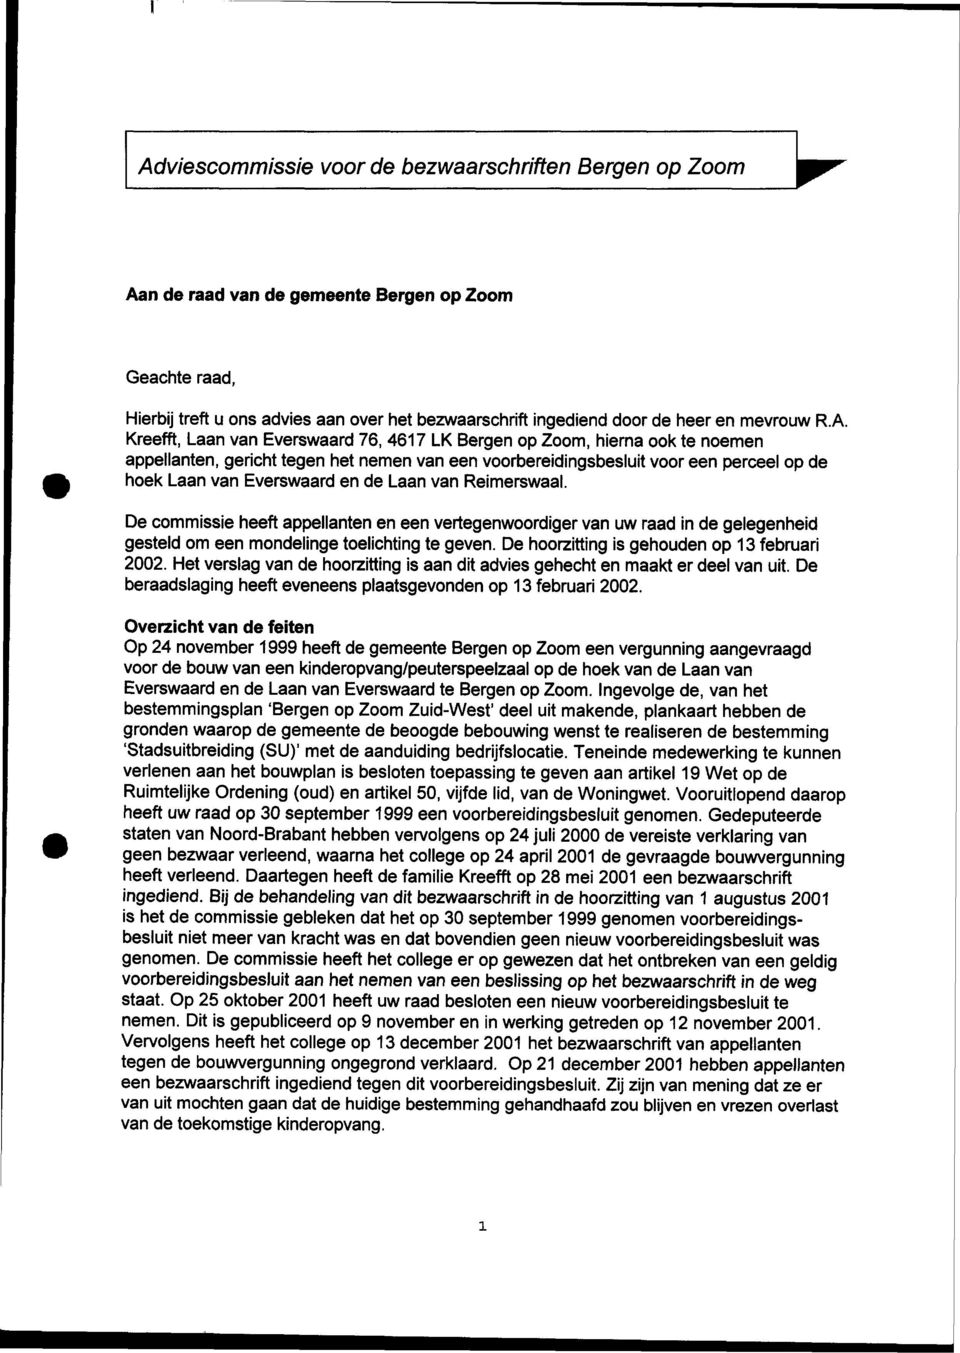 Kreefft, Laan van Everswaard 76, 4617 LK Bergen op Zoom, hierna ook te noemen appellanten, gericht tegen het nemen van een voorbereidingsbesluit voor een perceel op de hoek Laan van Everswaard en de